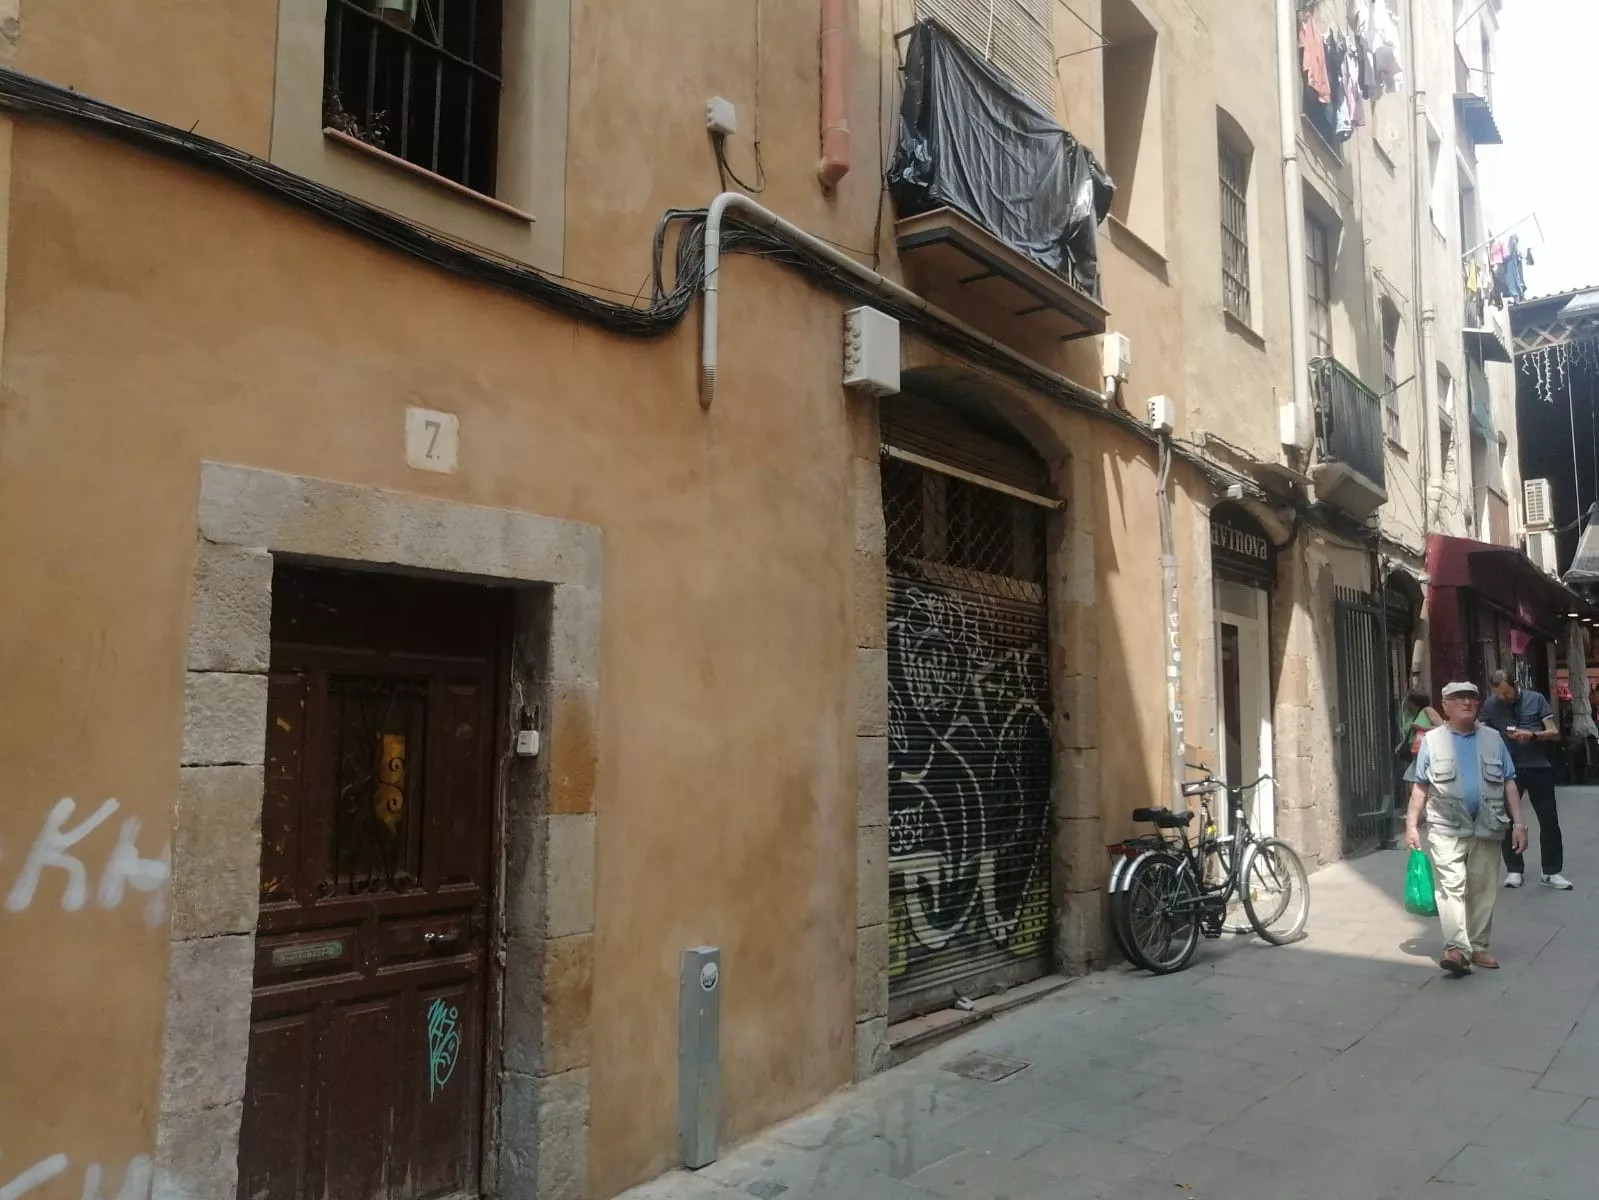 El número 7 de la calle de Morera en El Raval, donde se ha instalado un narcopiso / ANDONI BERNÁ